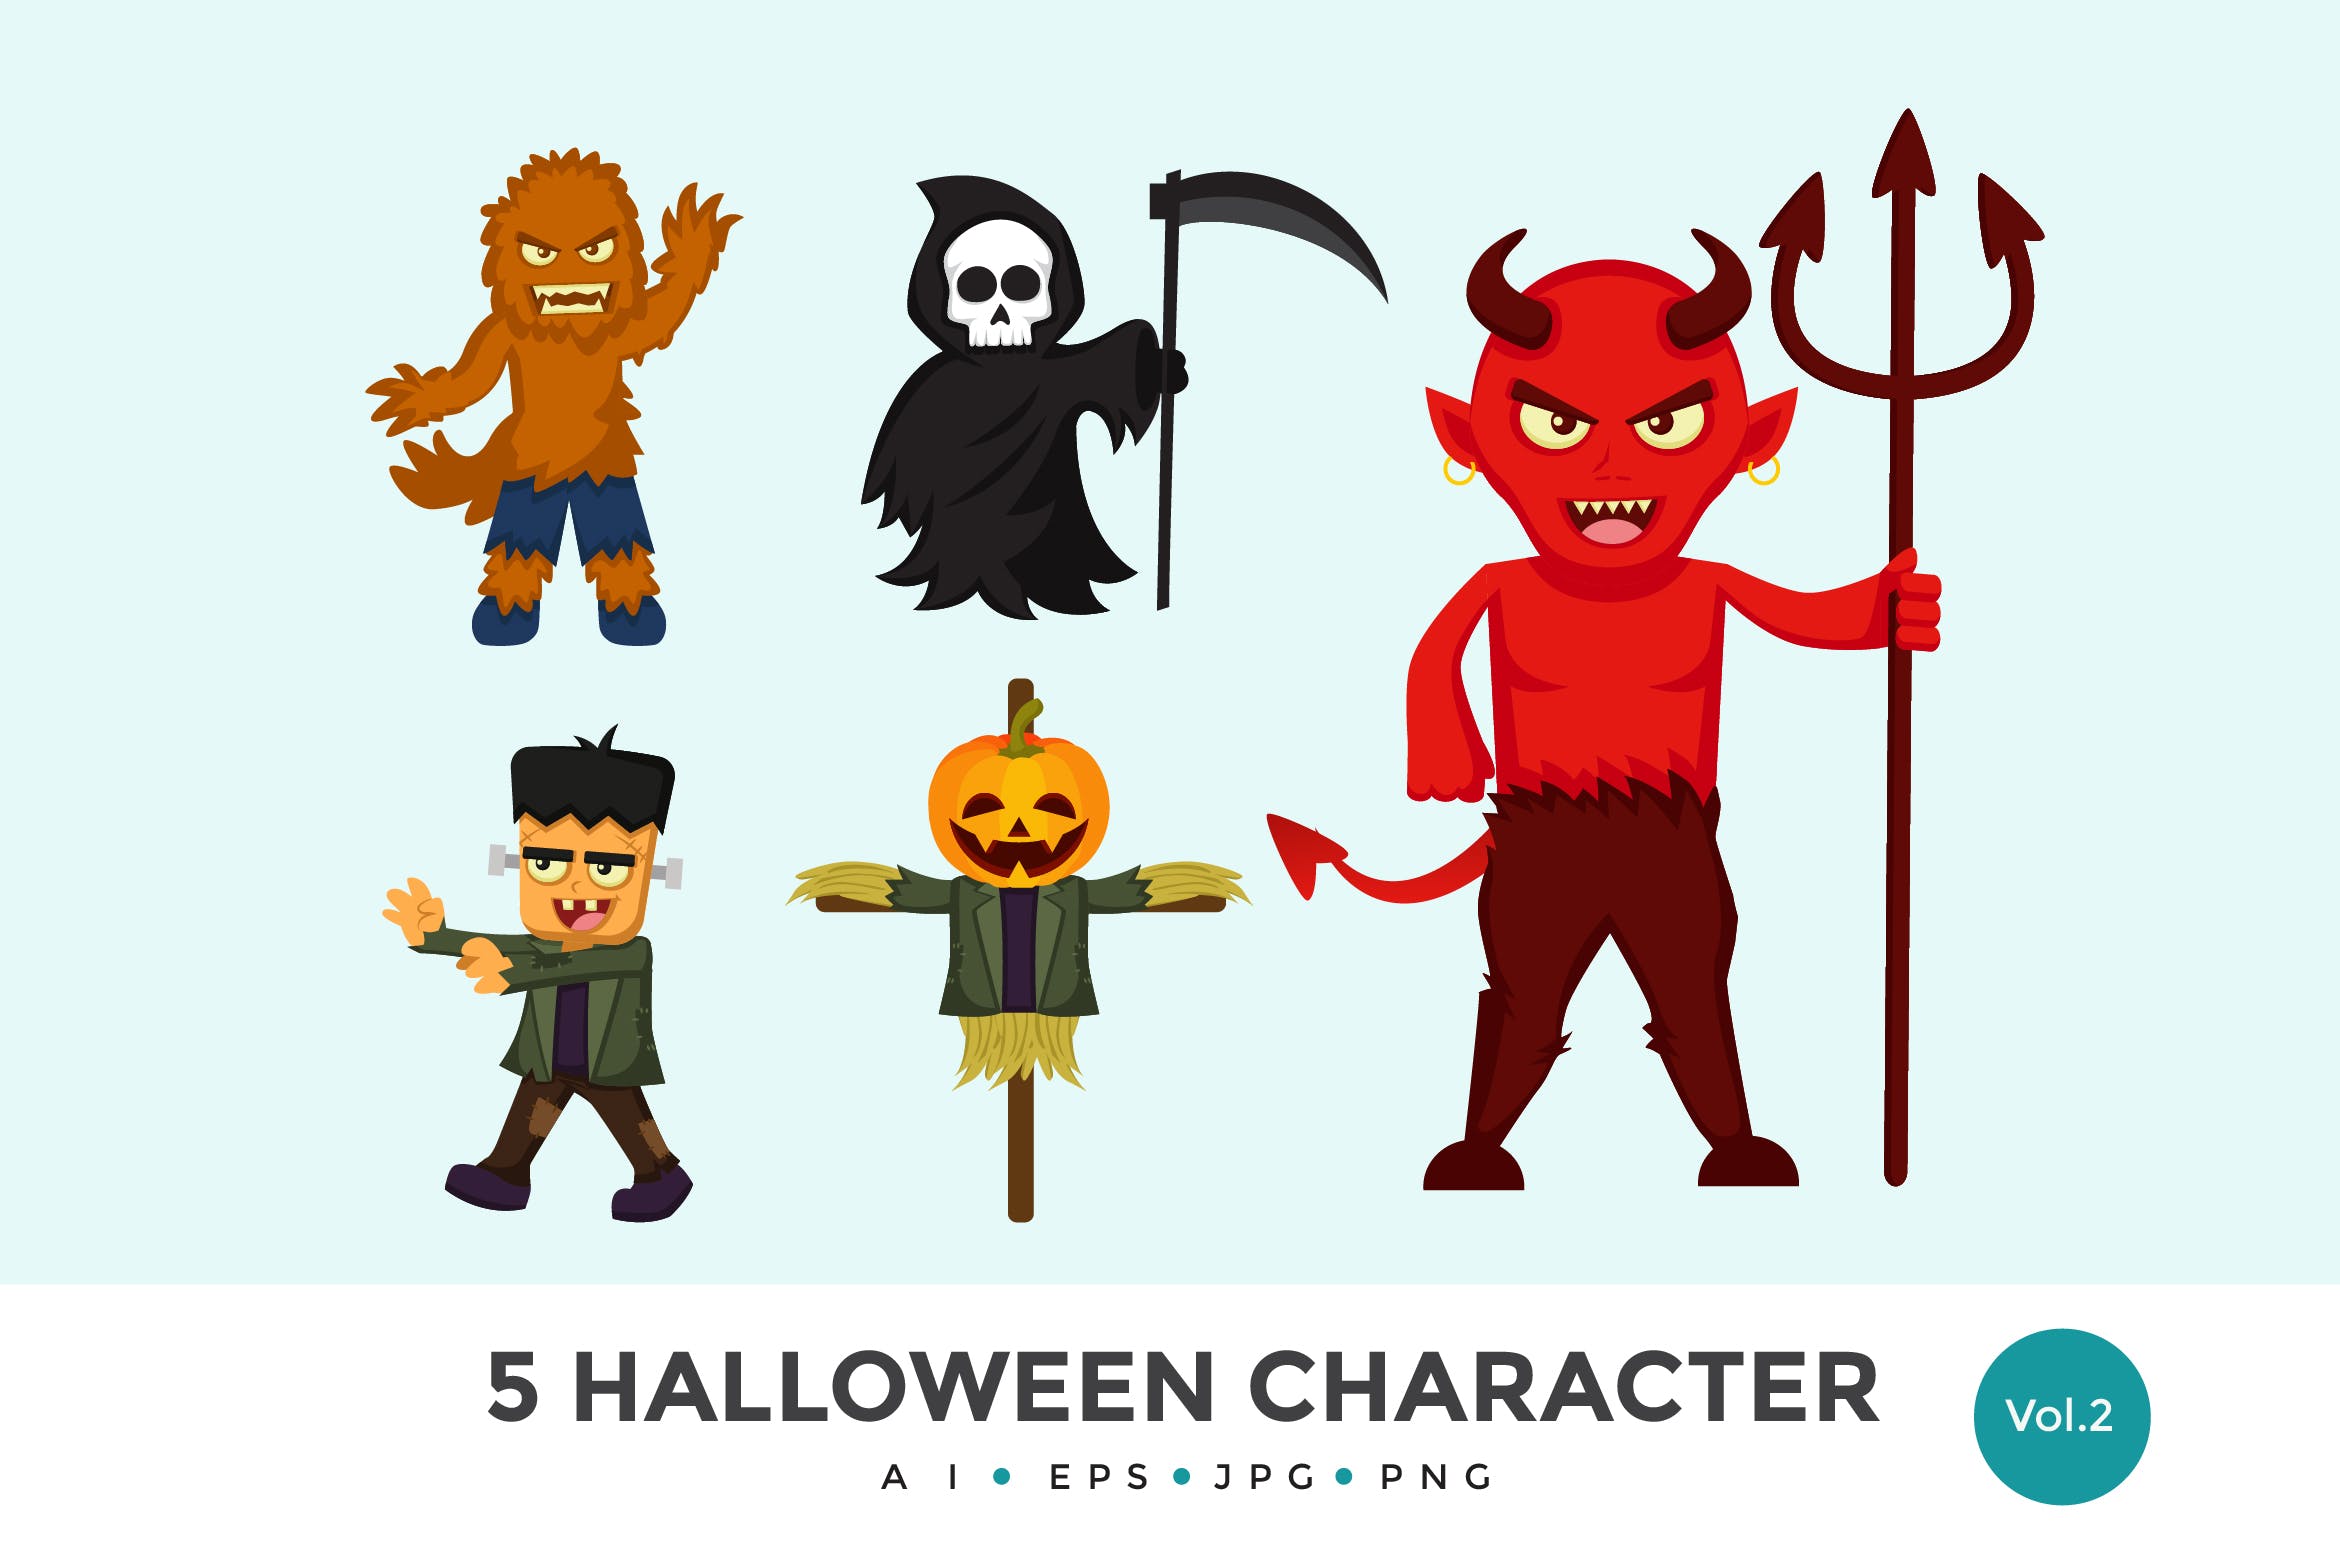 5个万圣节可爱怪物卡通人物矢量图形素材v2 5 Cute Halloween Monster Vector Character Set 2插图